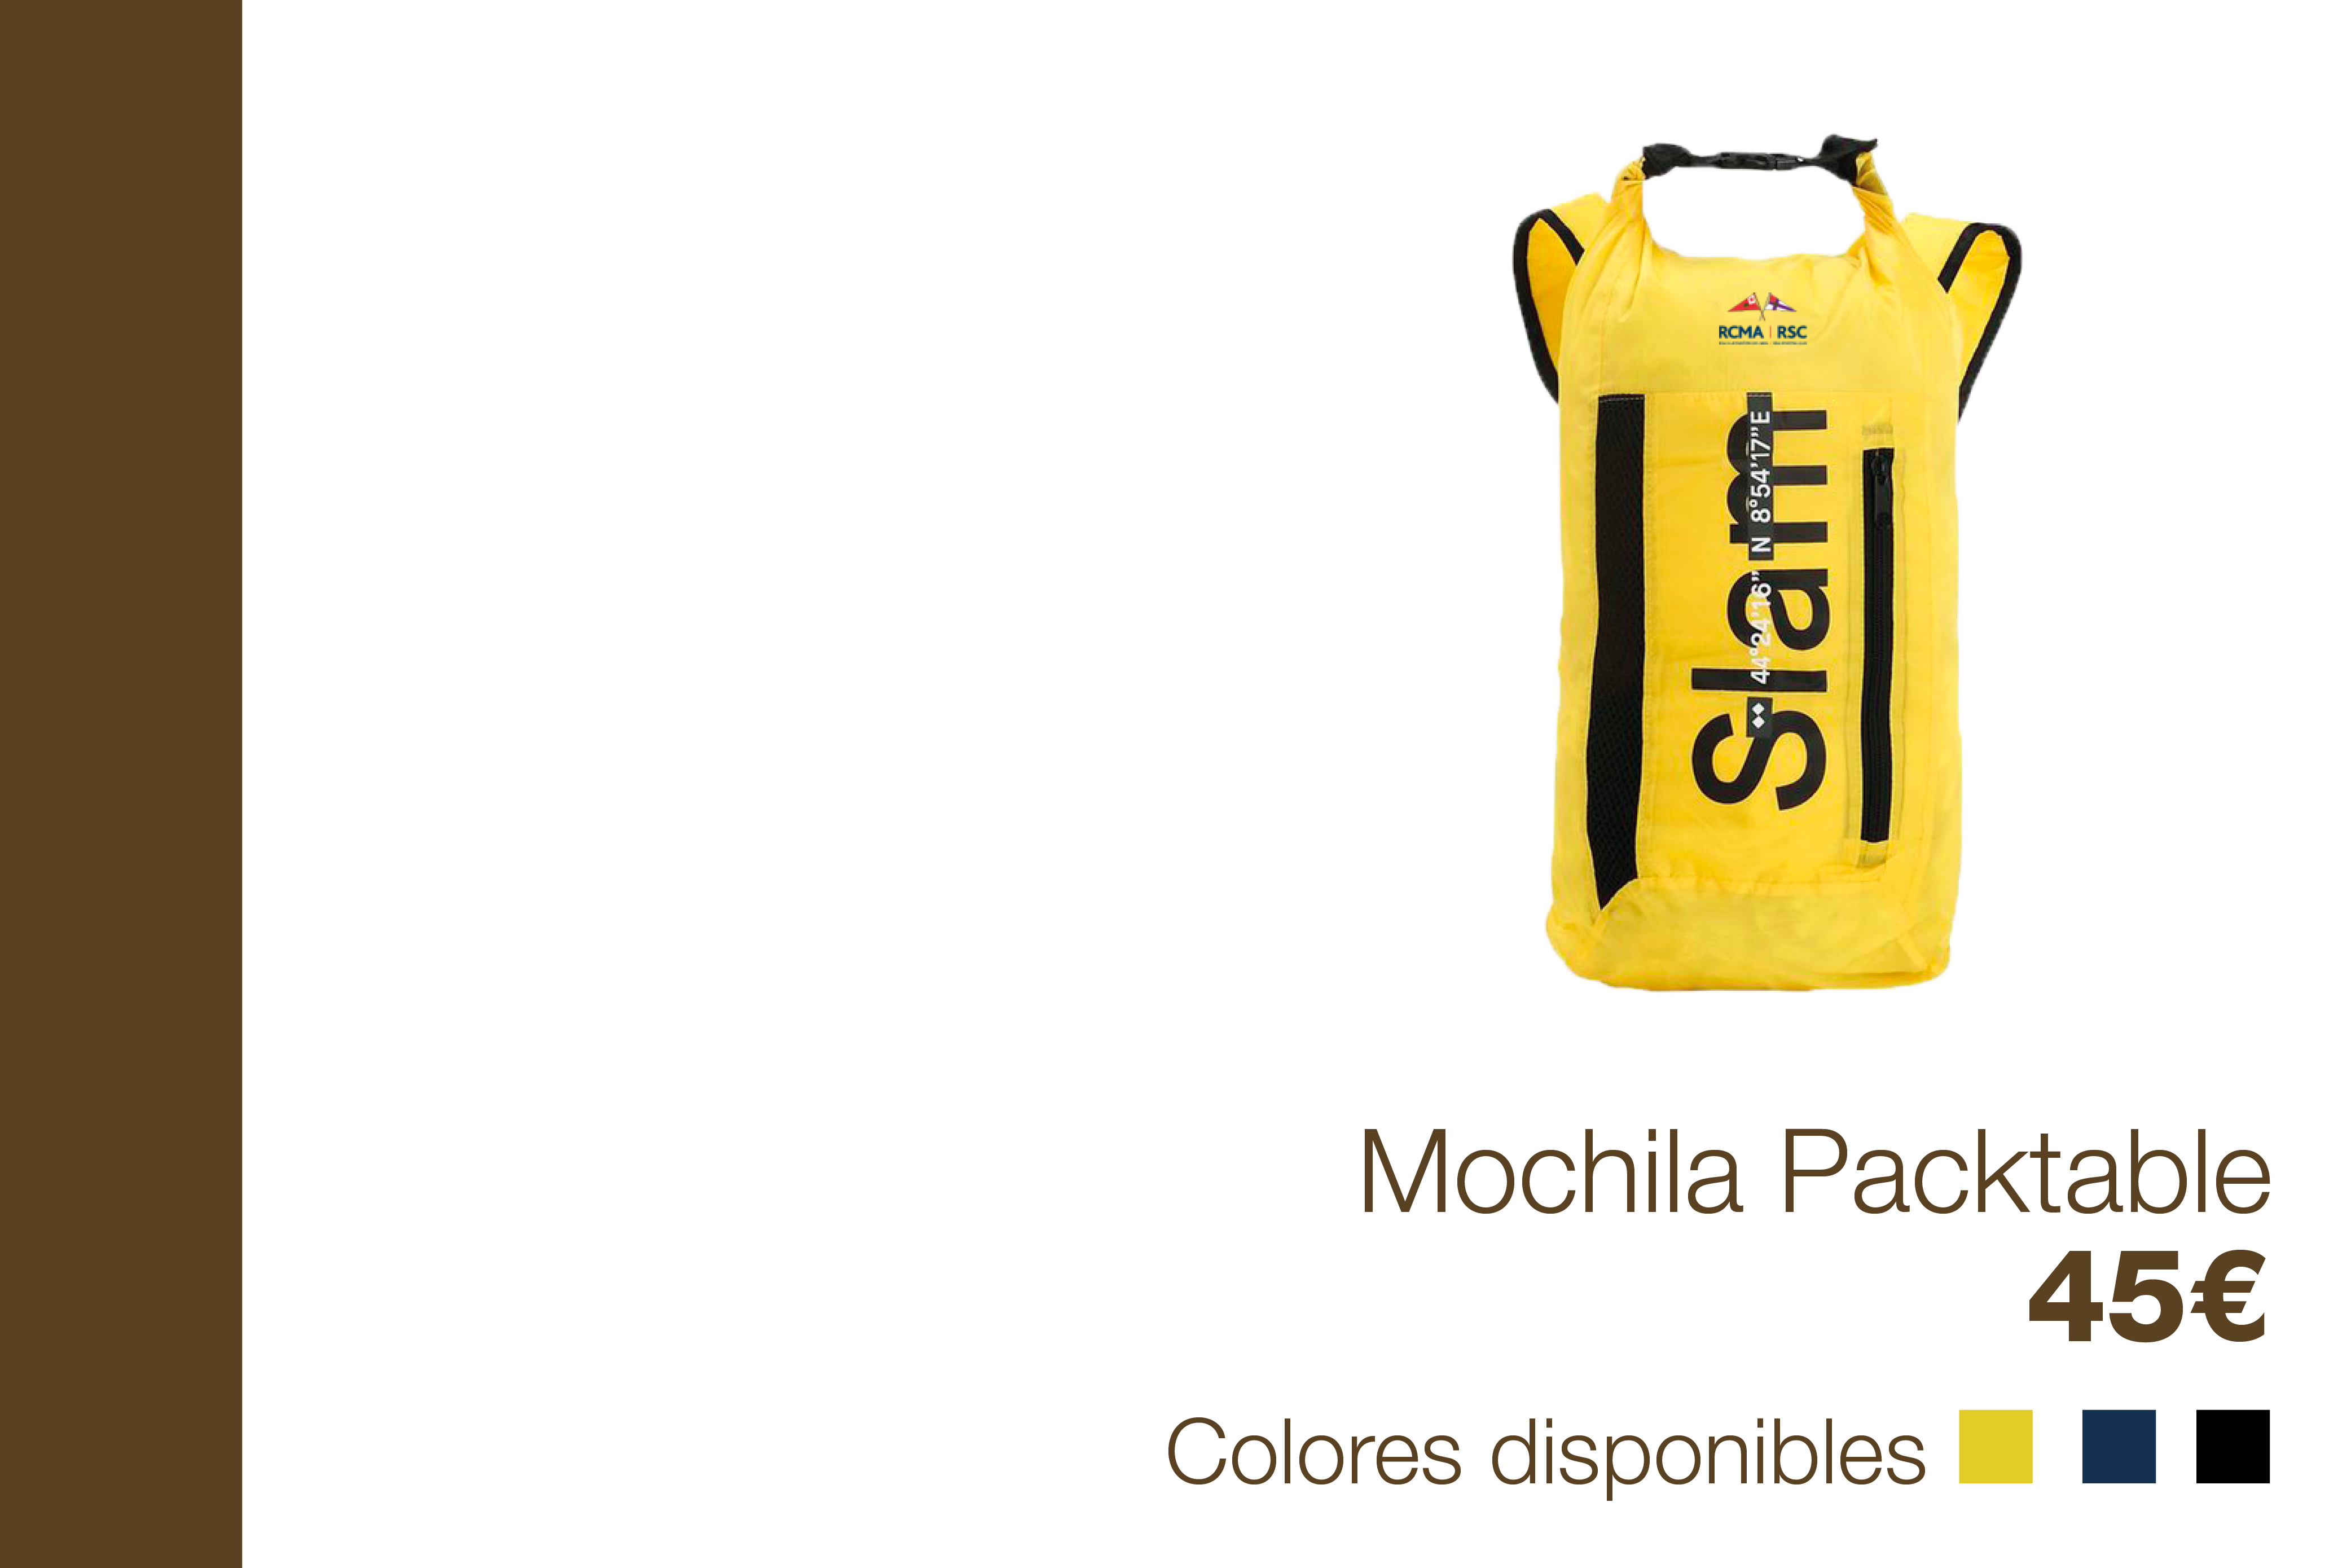 Mochila Packtable - 45